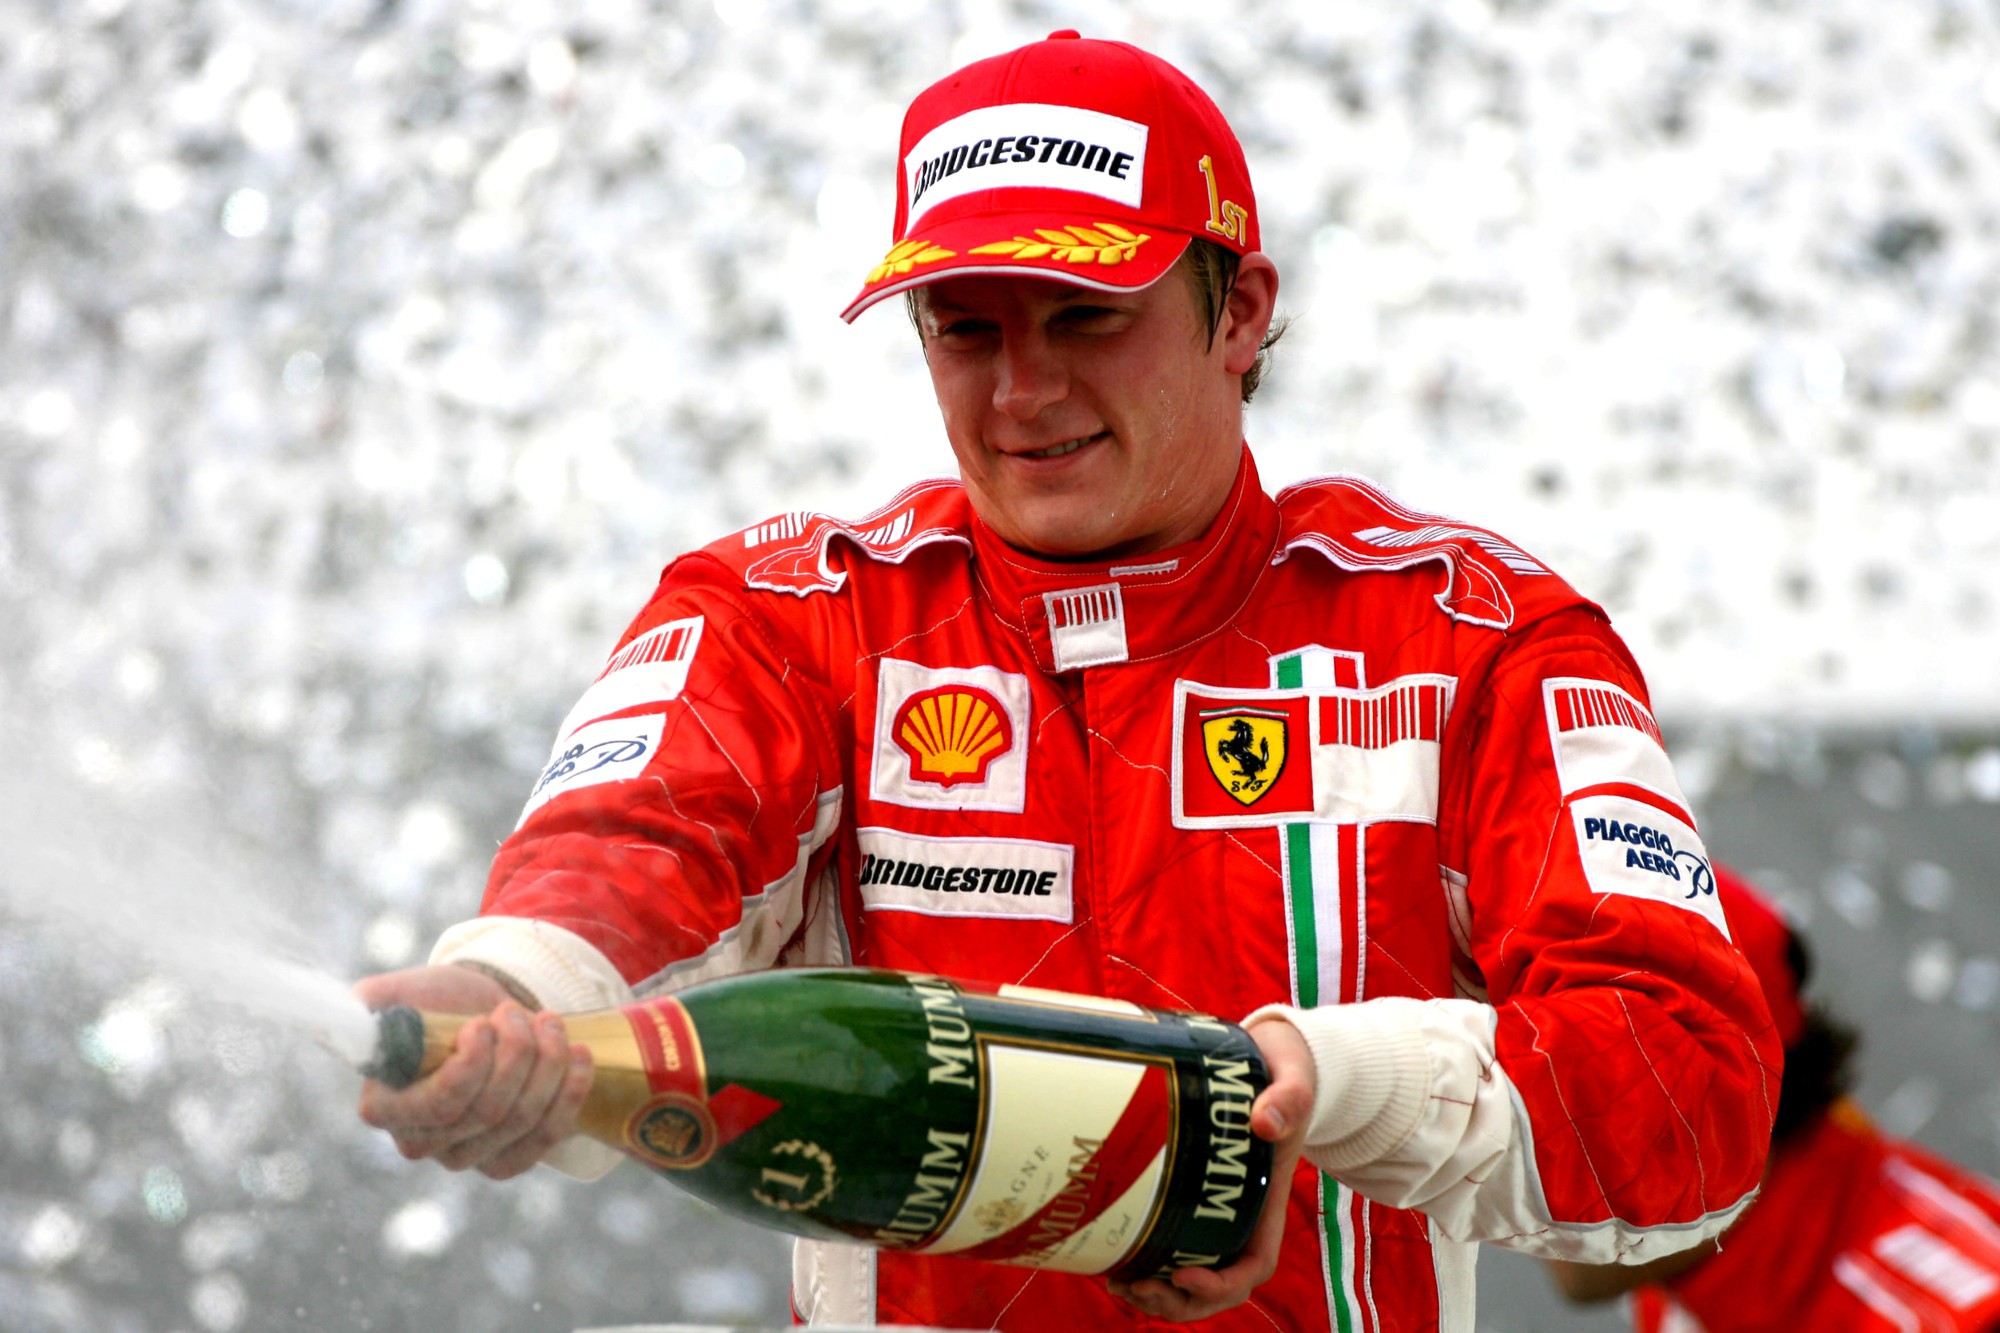 Vì sao Kimi Raikkonen tuyên bố chia tay Ferrari ở thời điểm nhạy cảm của mùa giải F1 2018? - Ảnh 9.